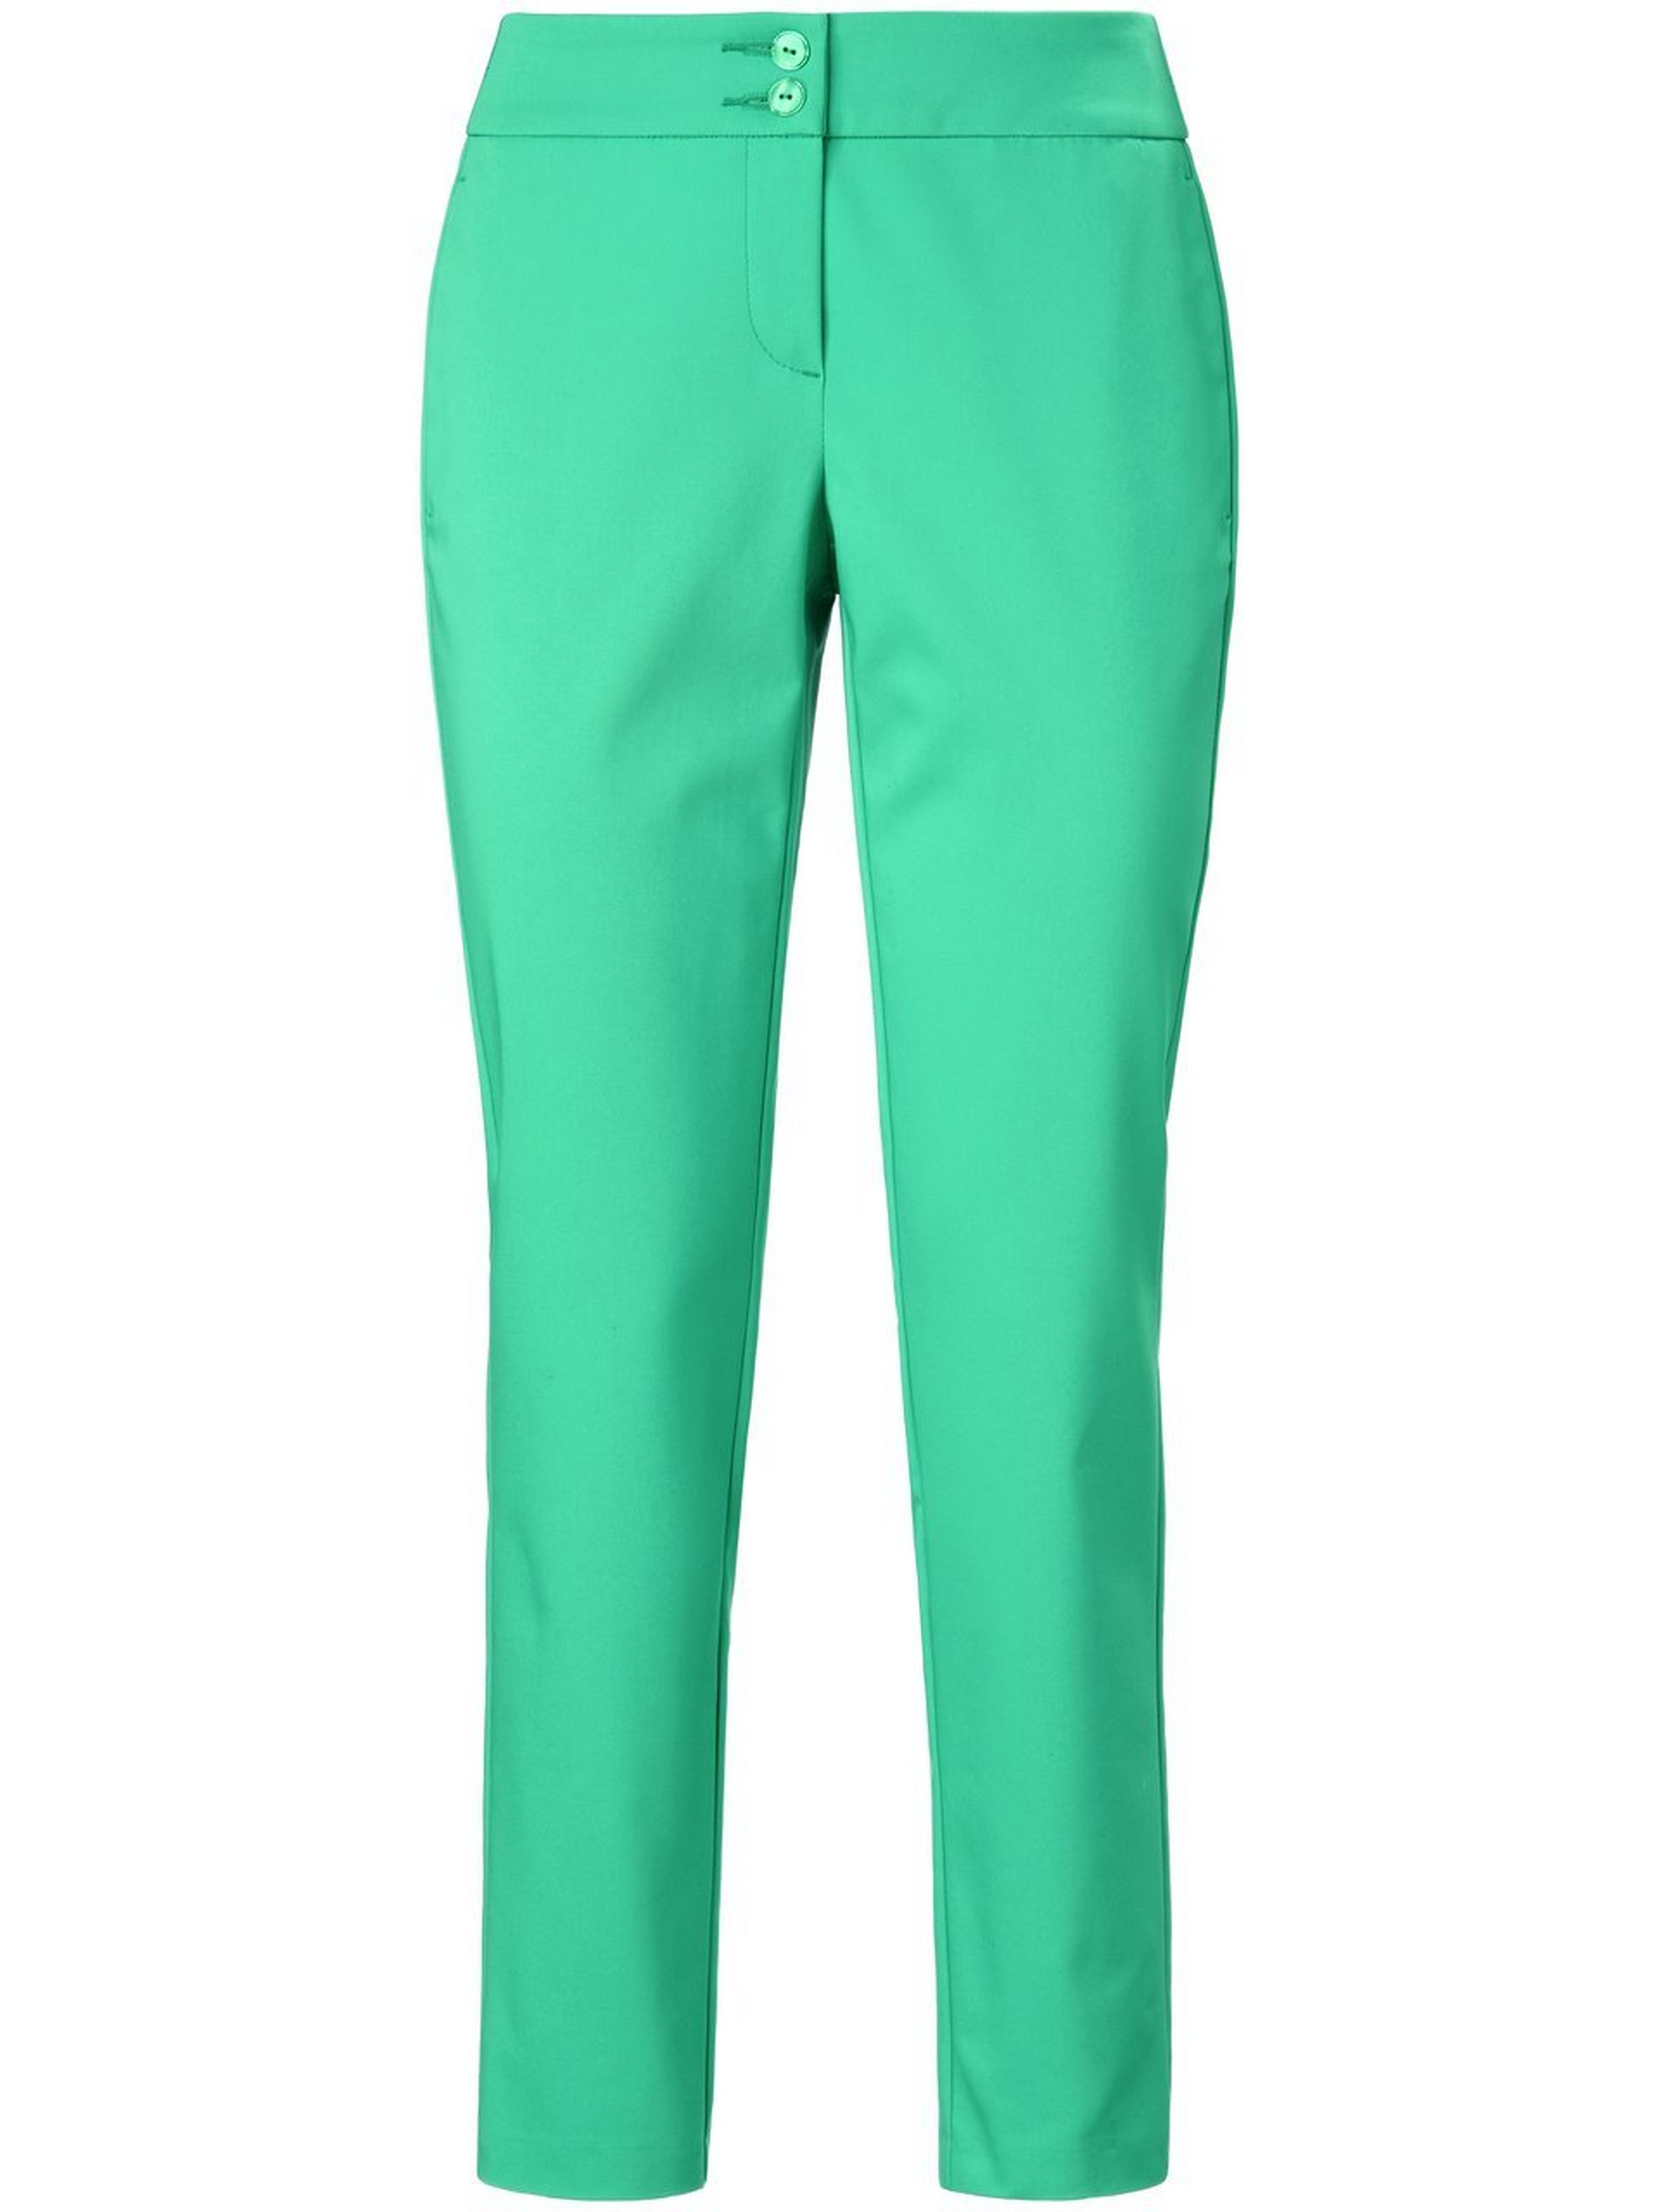 Le pantalon longueur chevilles coupe Barbara  MYBC vert